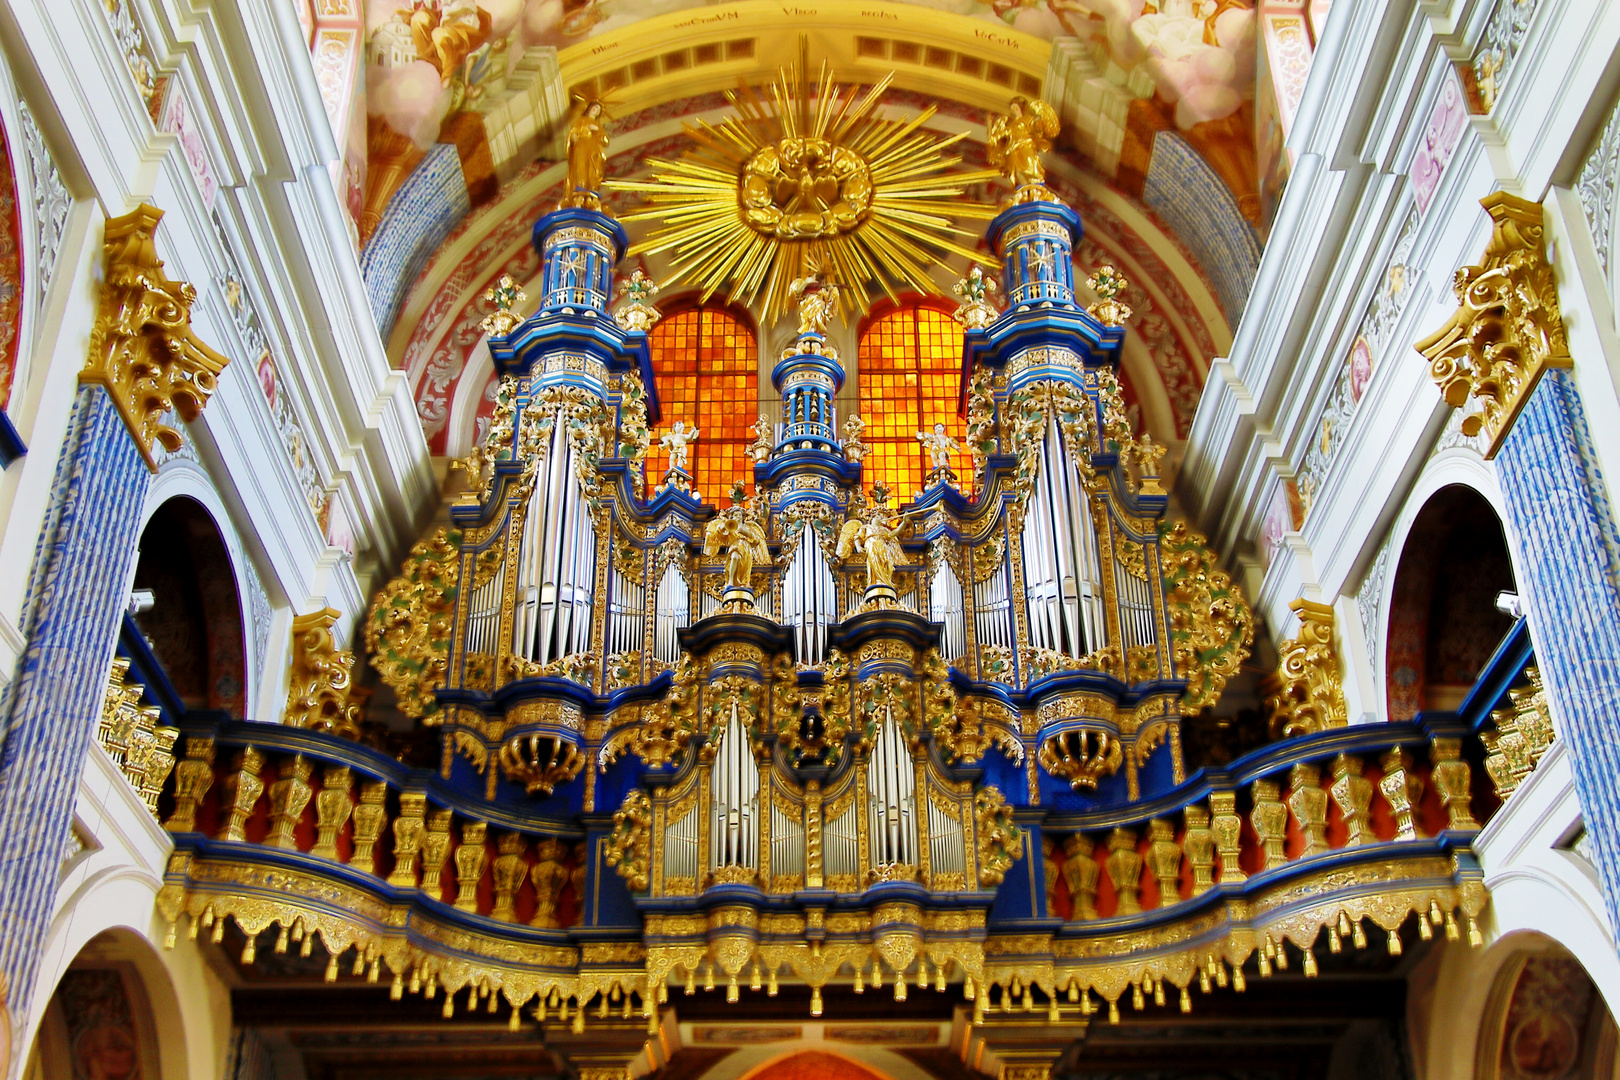 Barock-Orgel "Heilige Linde" (Swieta Lipka)